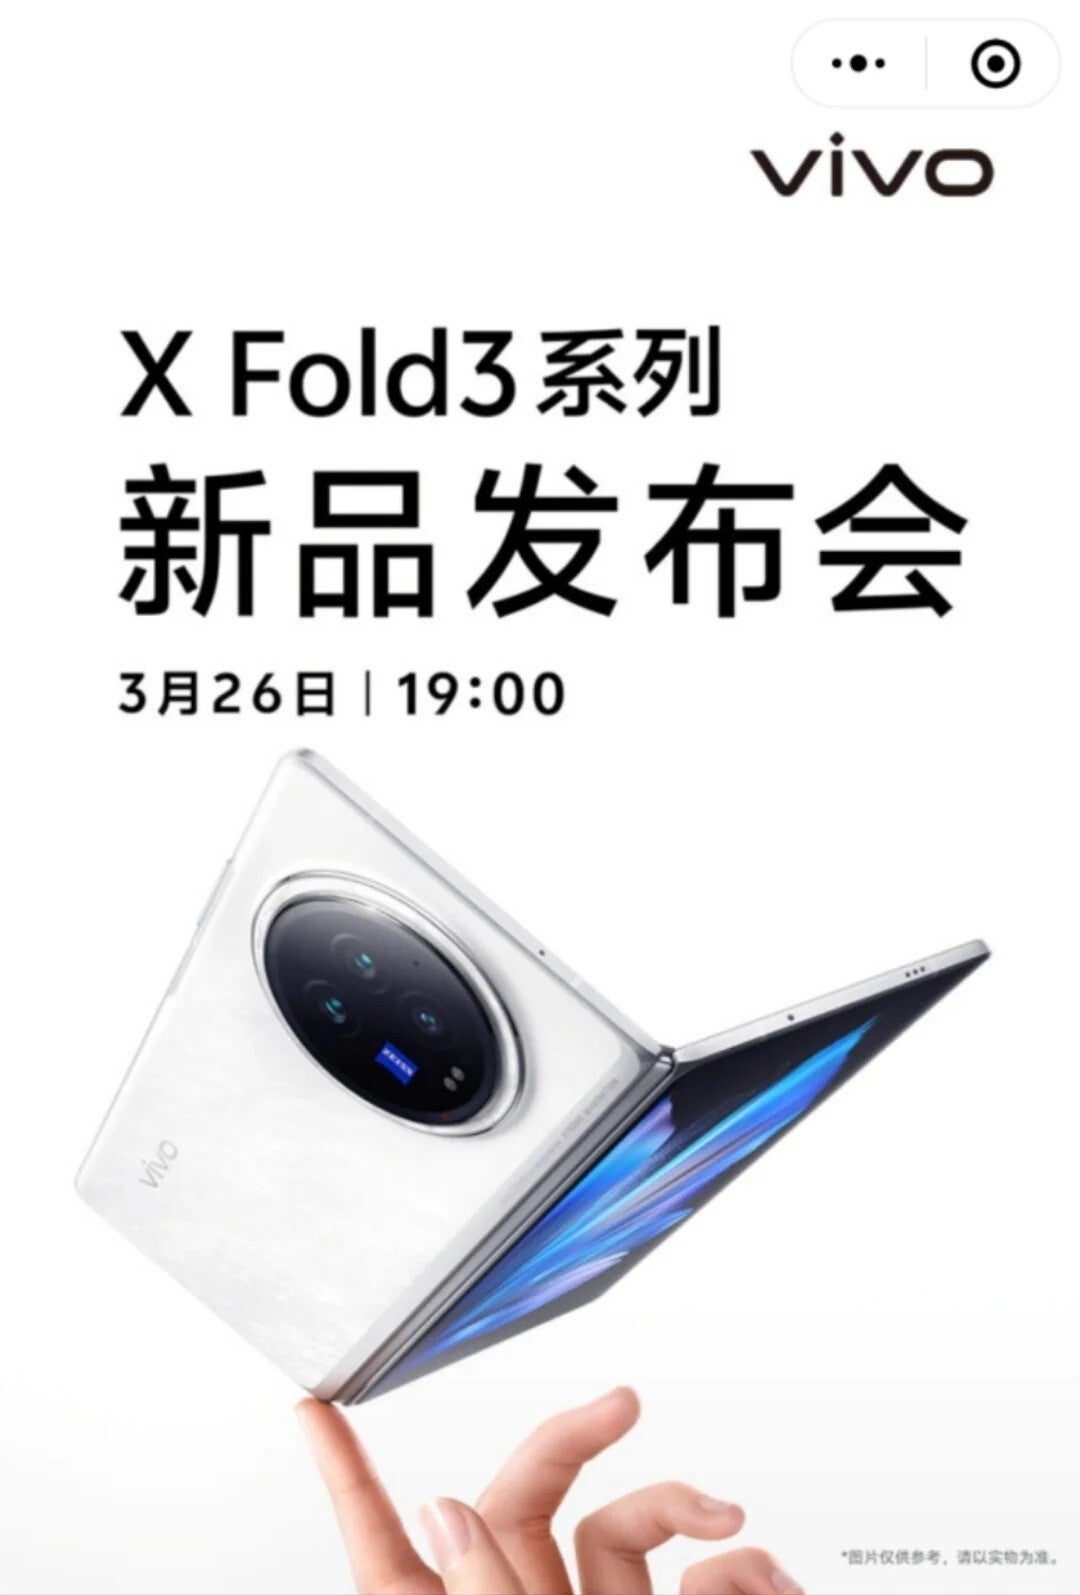 Série Vivo X Fold 3 deve ser lançada em pouco mais de uma semana: confira a data exata